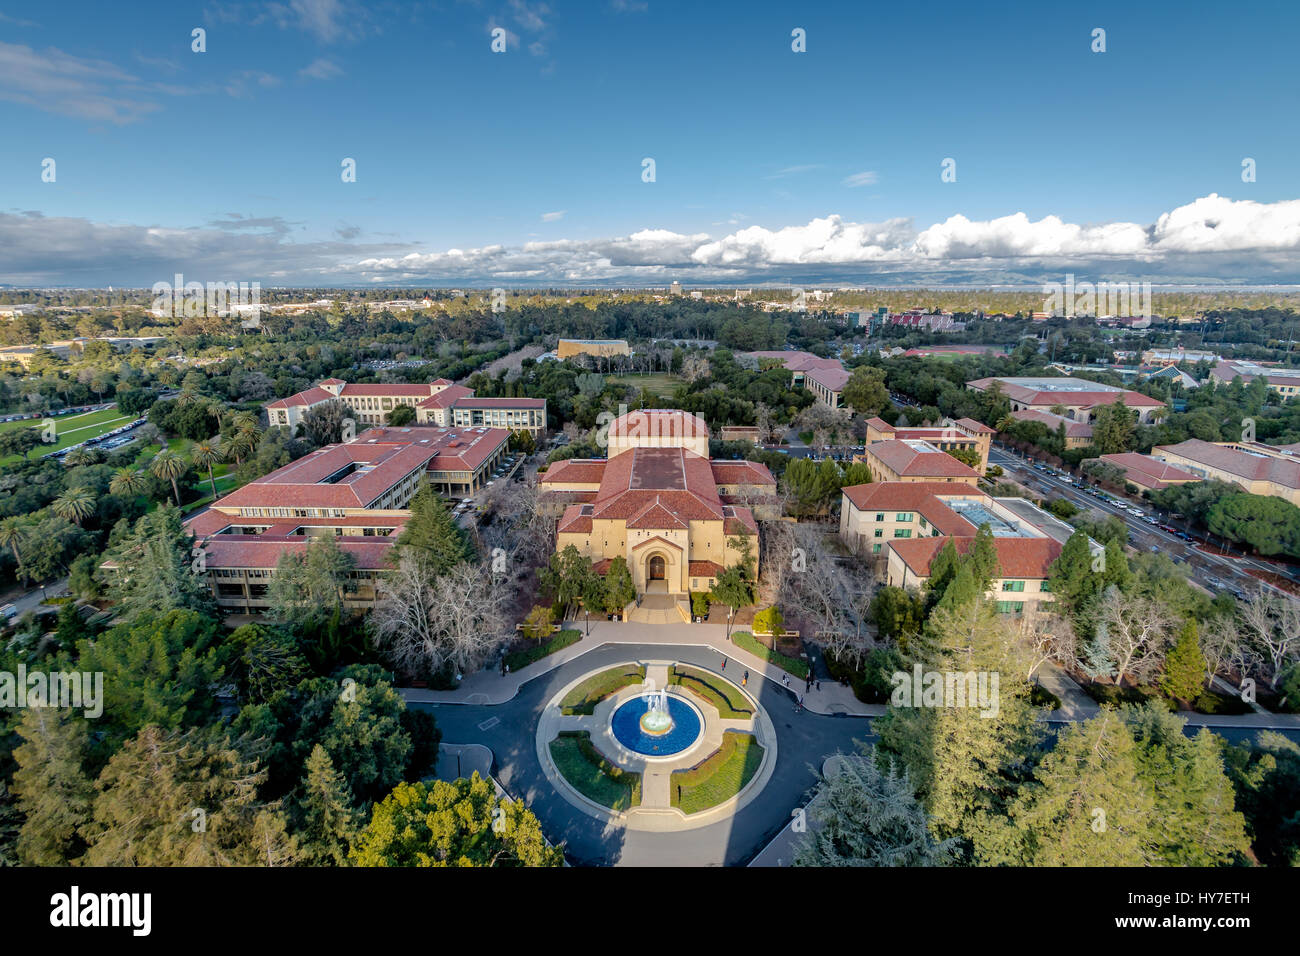 Vue aérienne du Campus de l'Université de Stanford - Palo Alto, Californie, États-Unis Banque D'Images